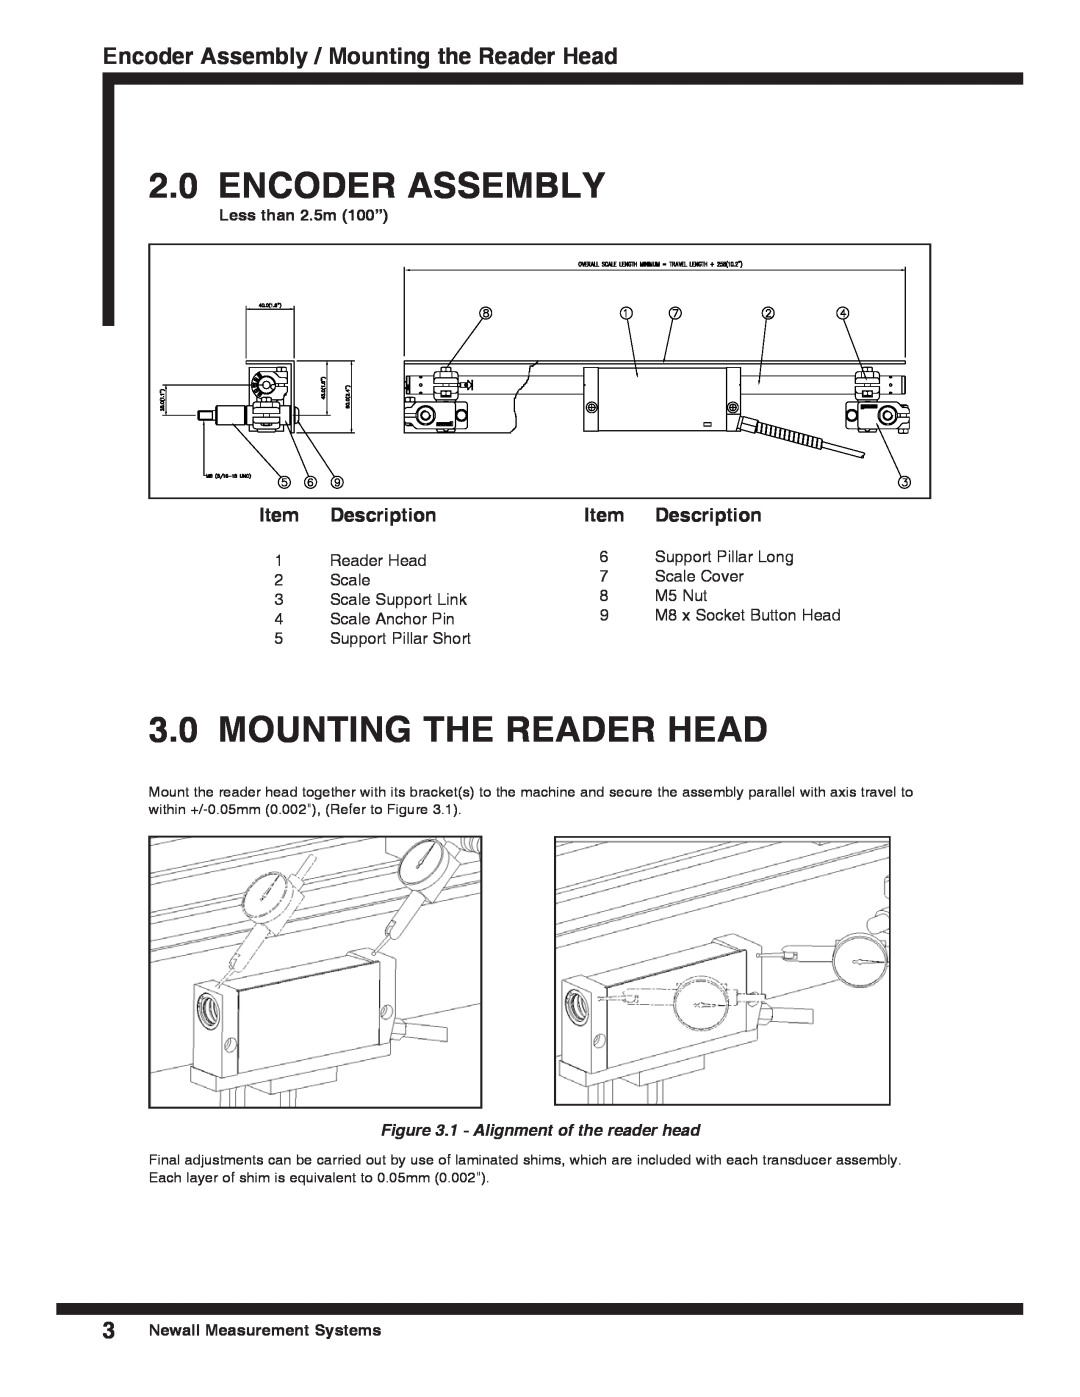 Microsoft SHG-TC, SHG-TS, SHG-VS 3.0MOUNTING THE READER HEAD, Encoder Assembly / Mounting the Reader Head, Description 